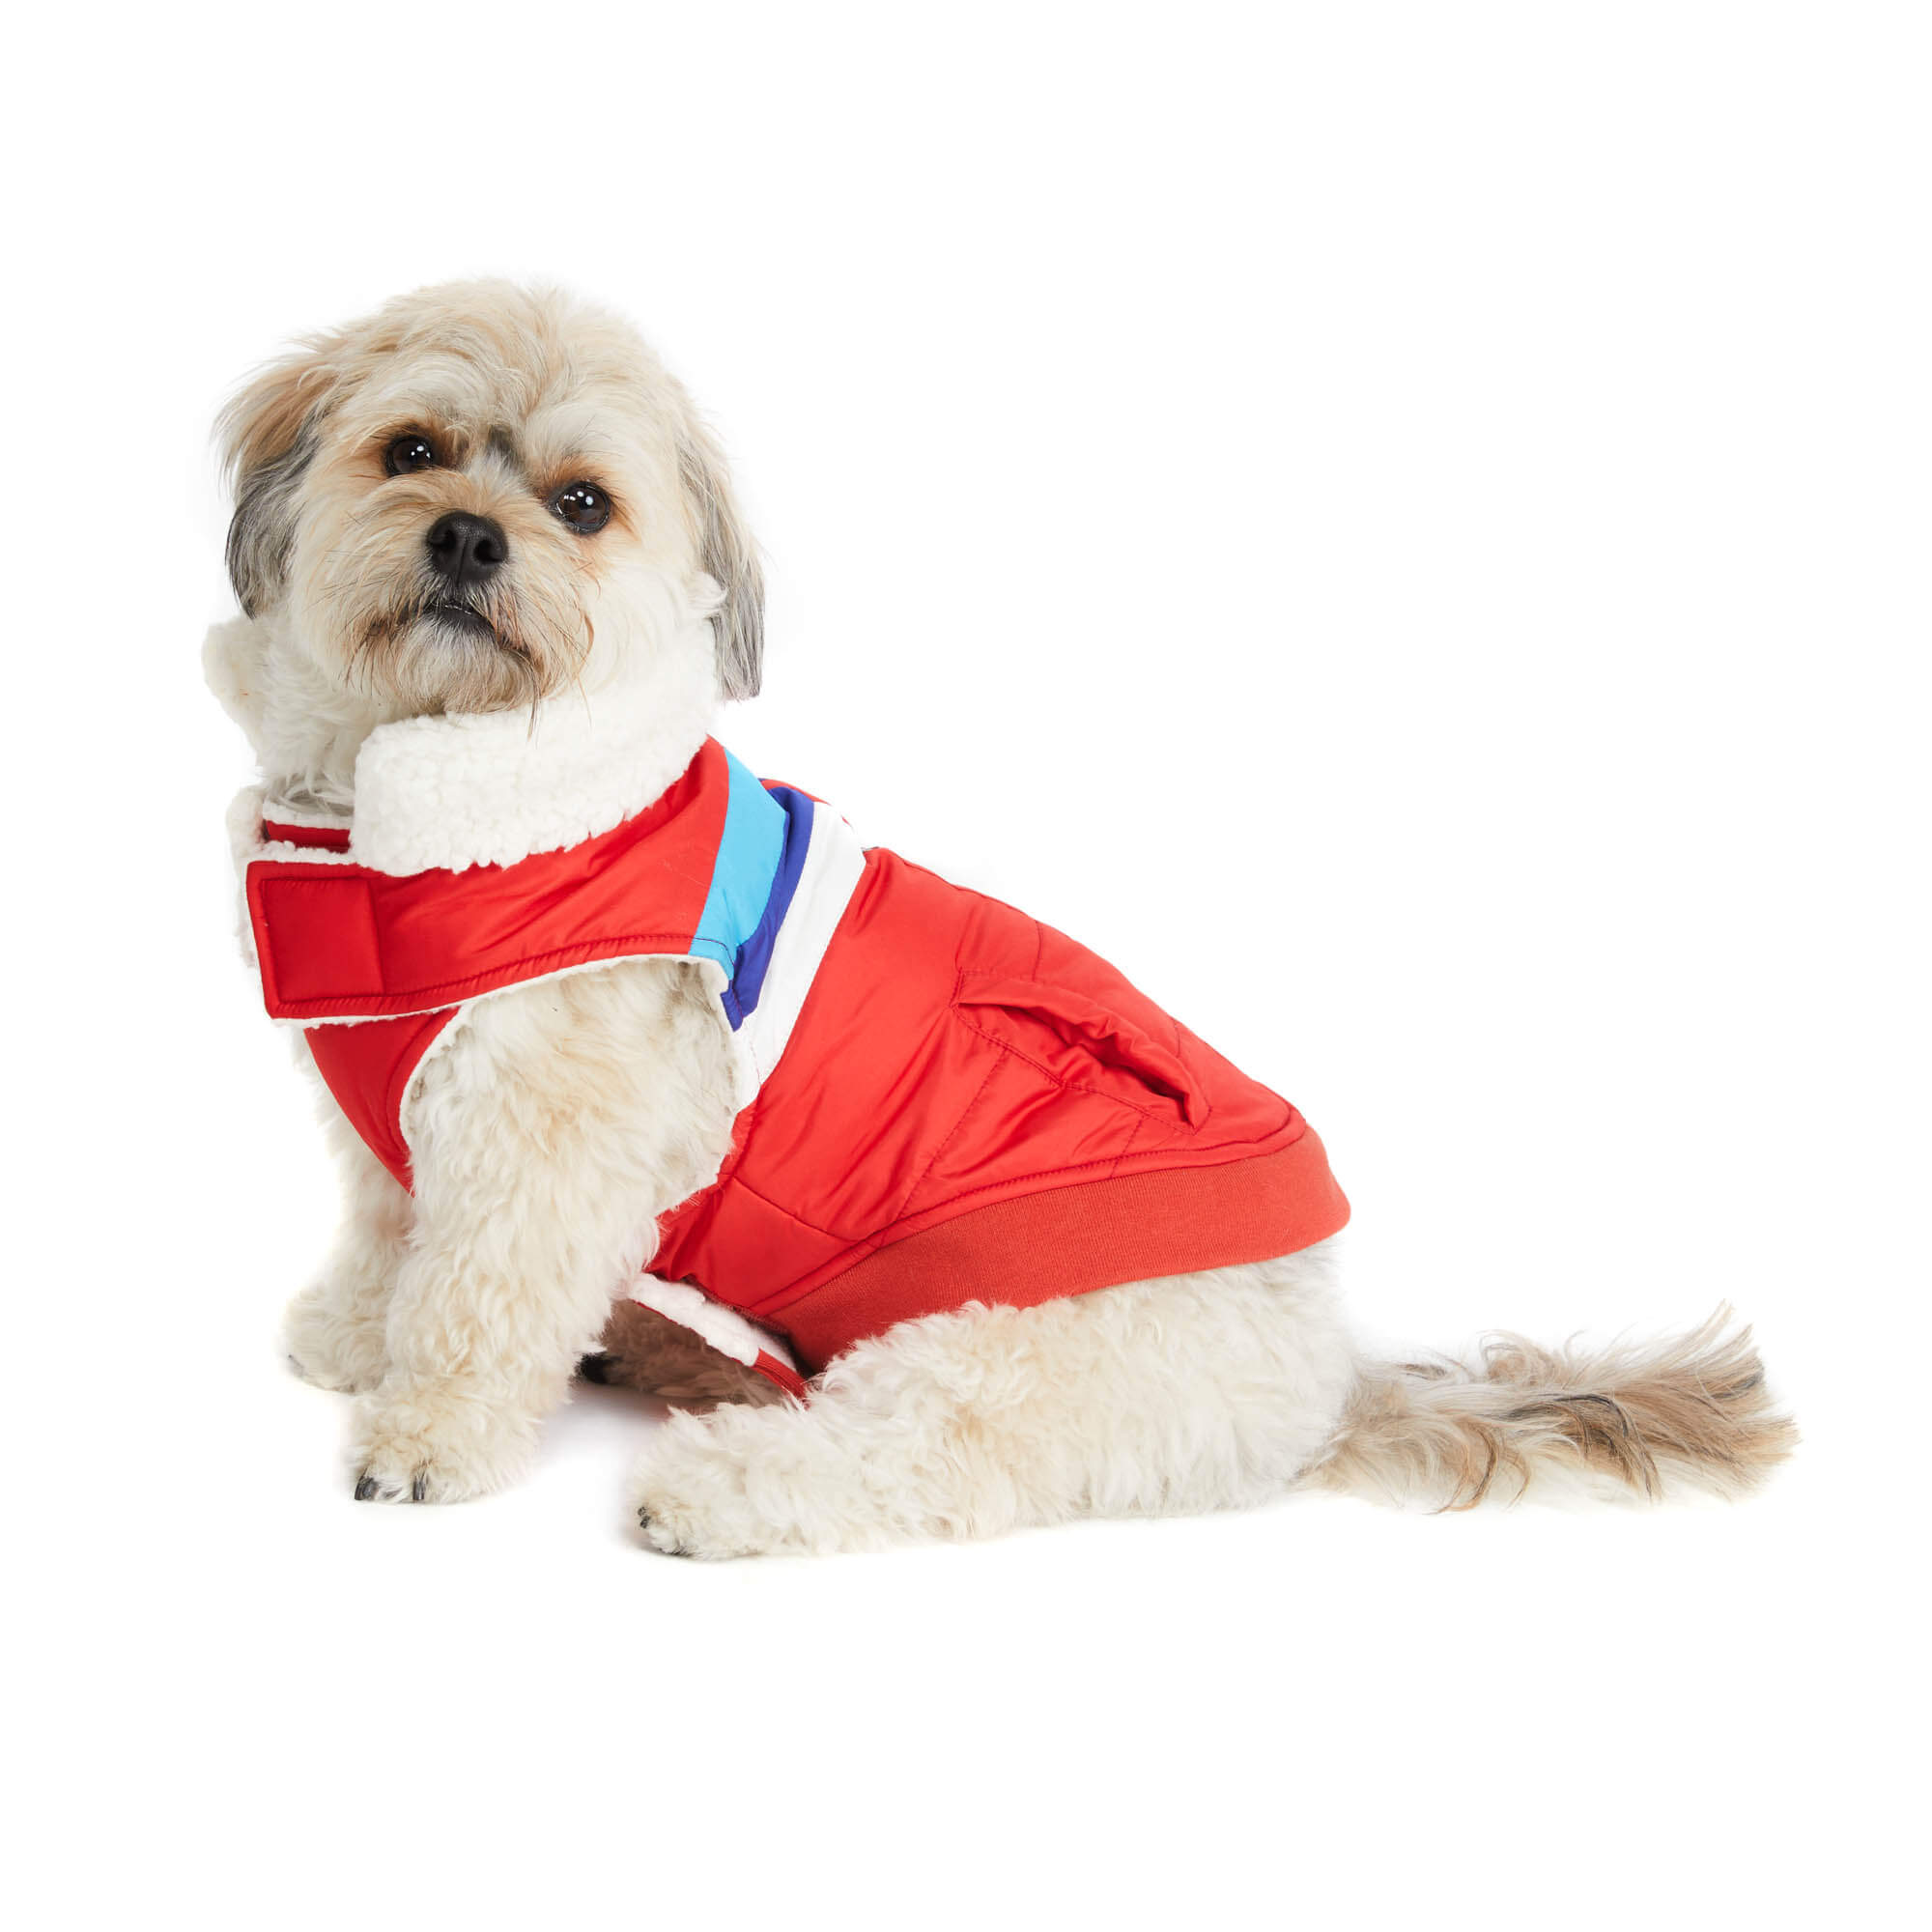 Dog wearing red ski jacket. Side view